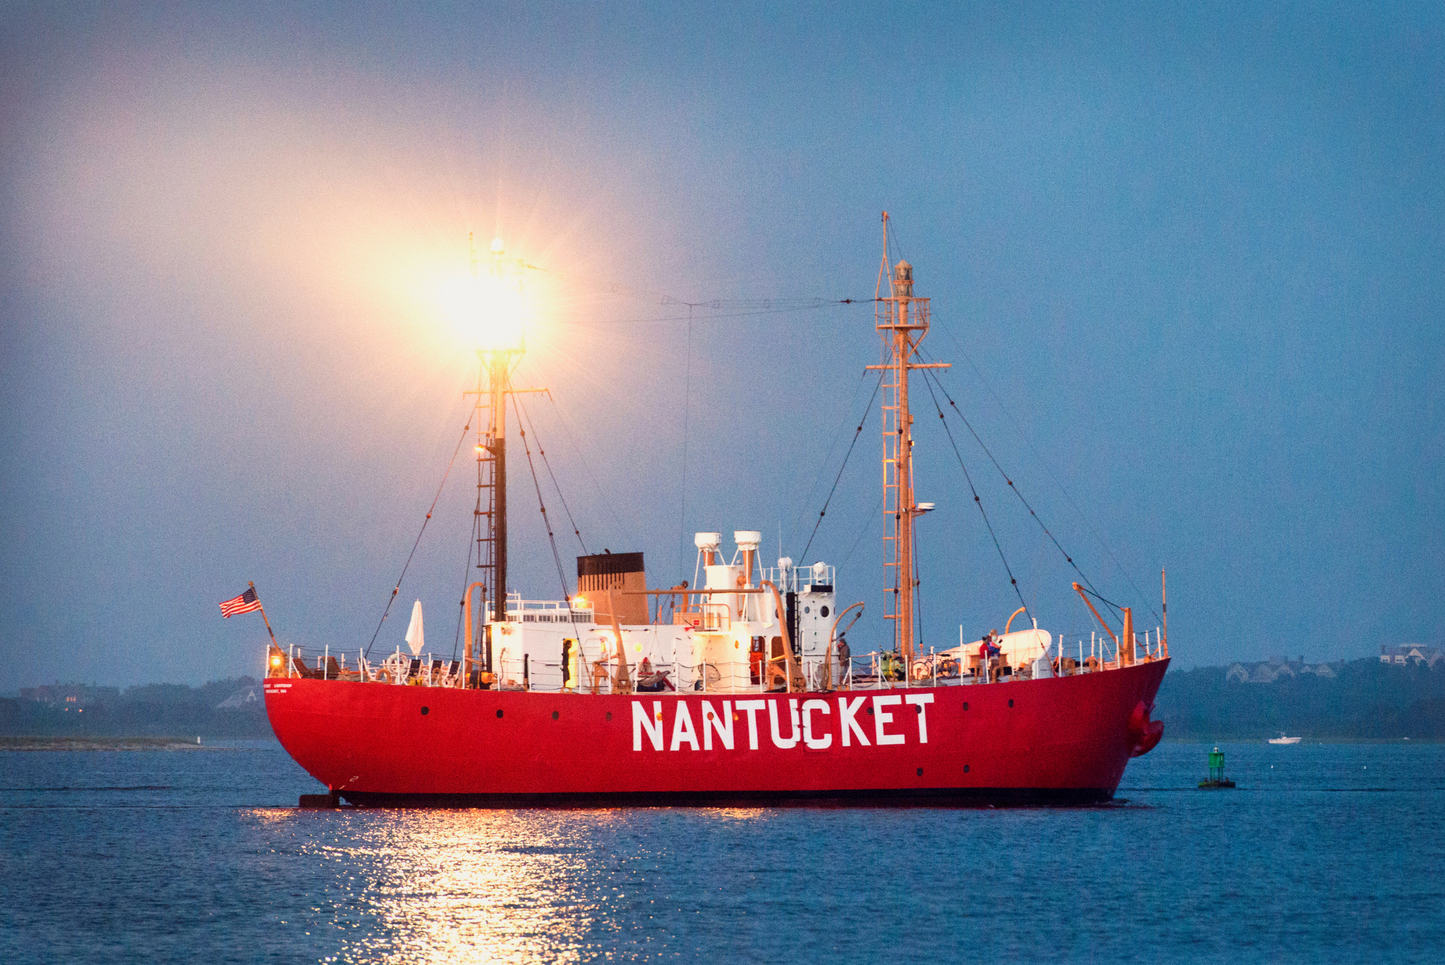 Nantucket Lightship, No. 1237